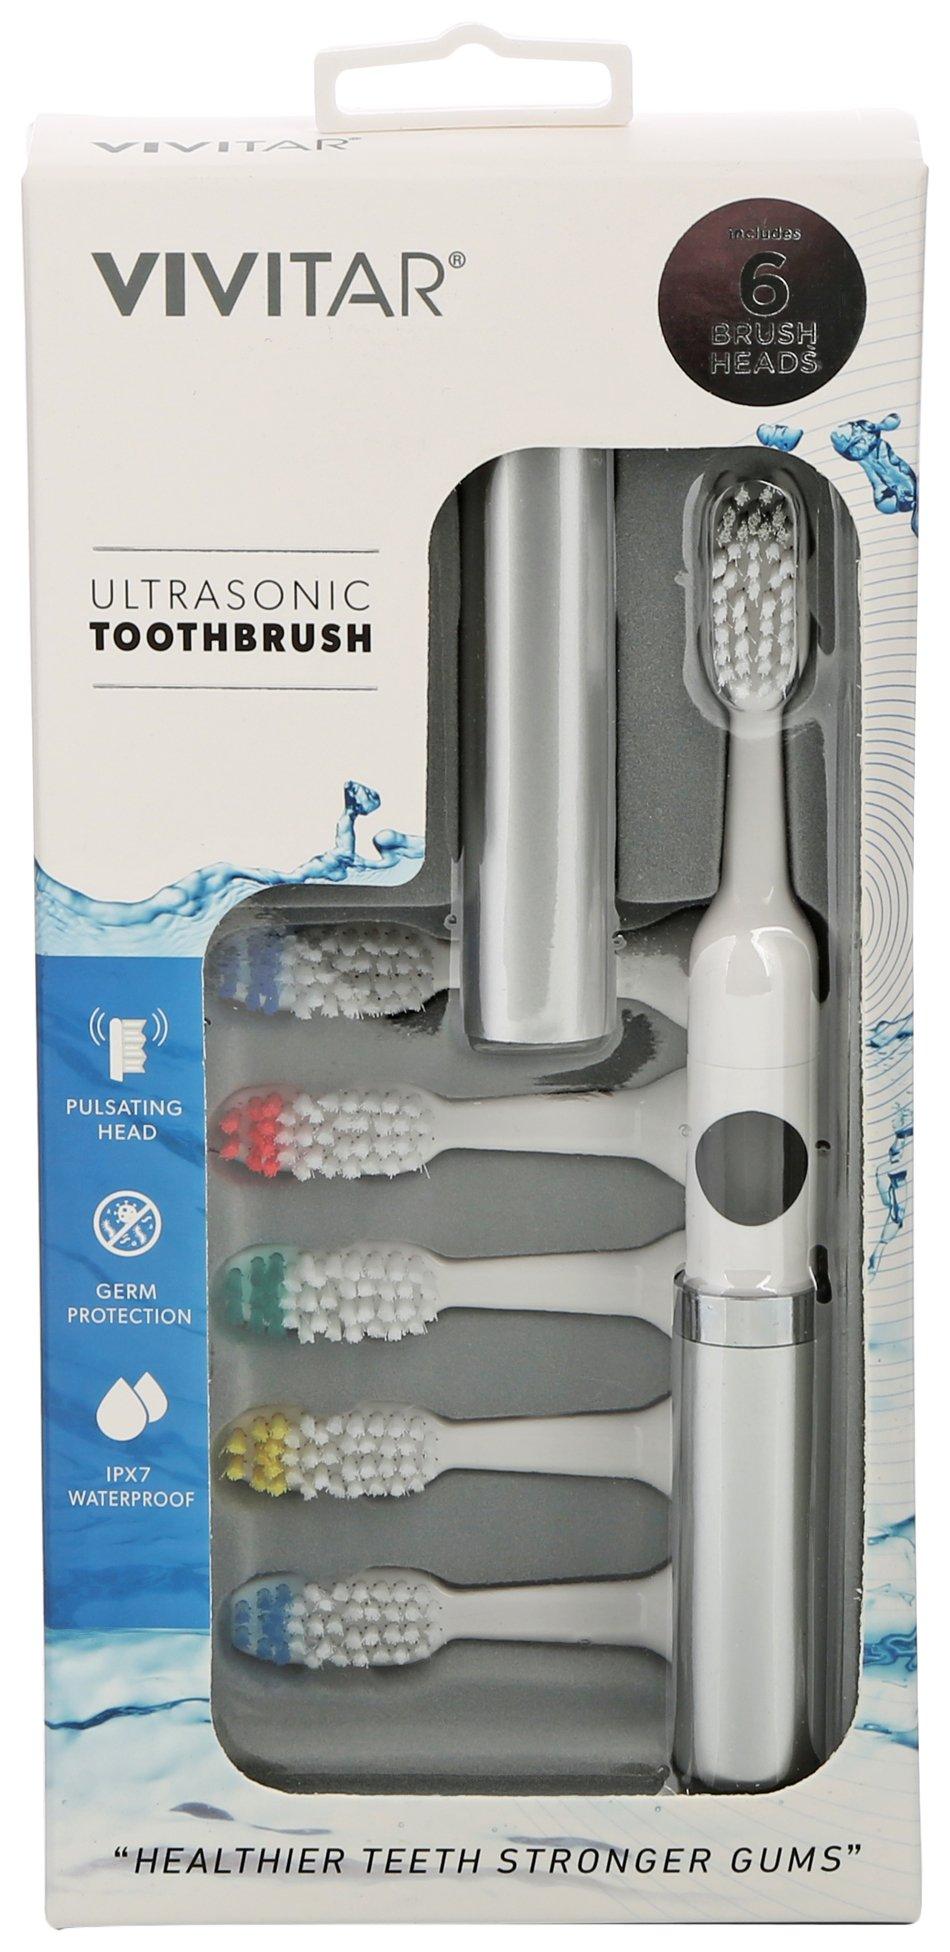 Vivitar Ultrasonic Toothbrush With 6 Brush Heads